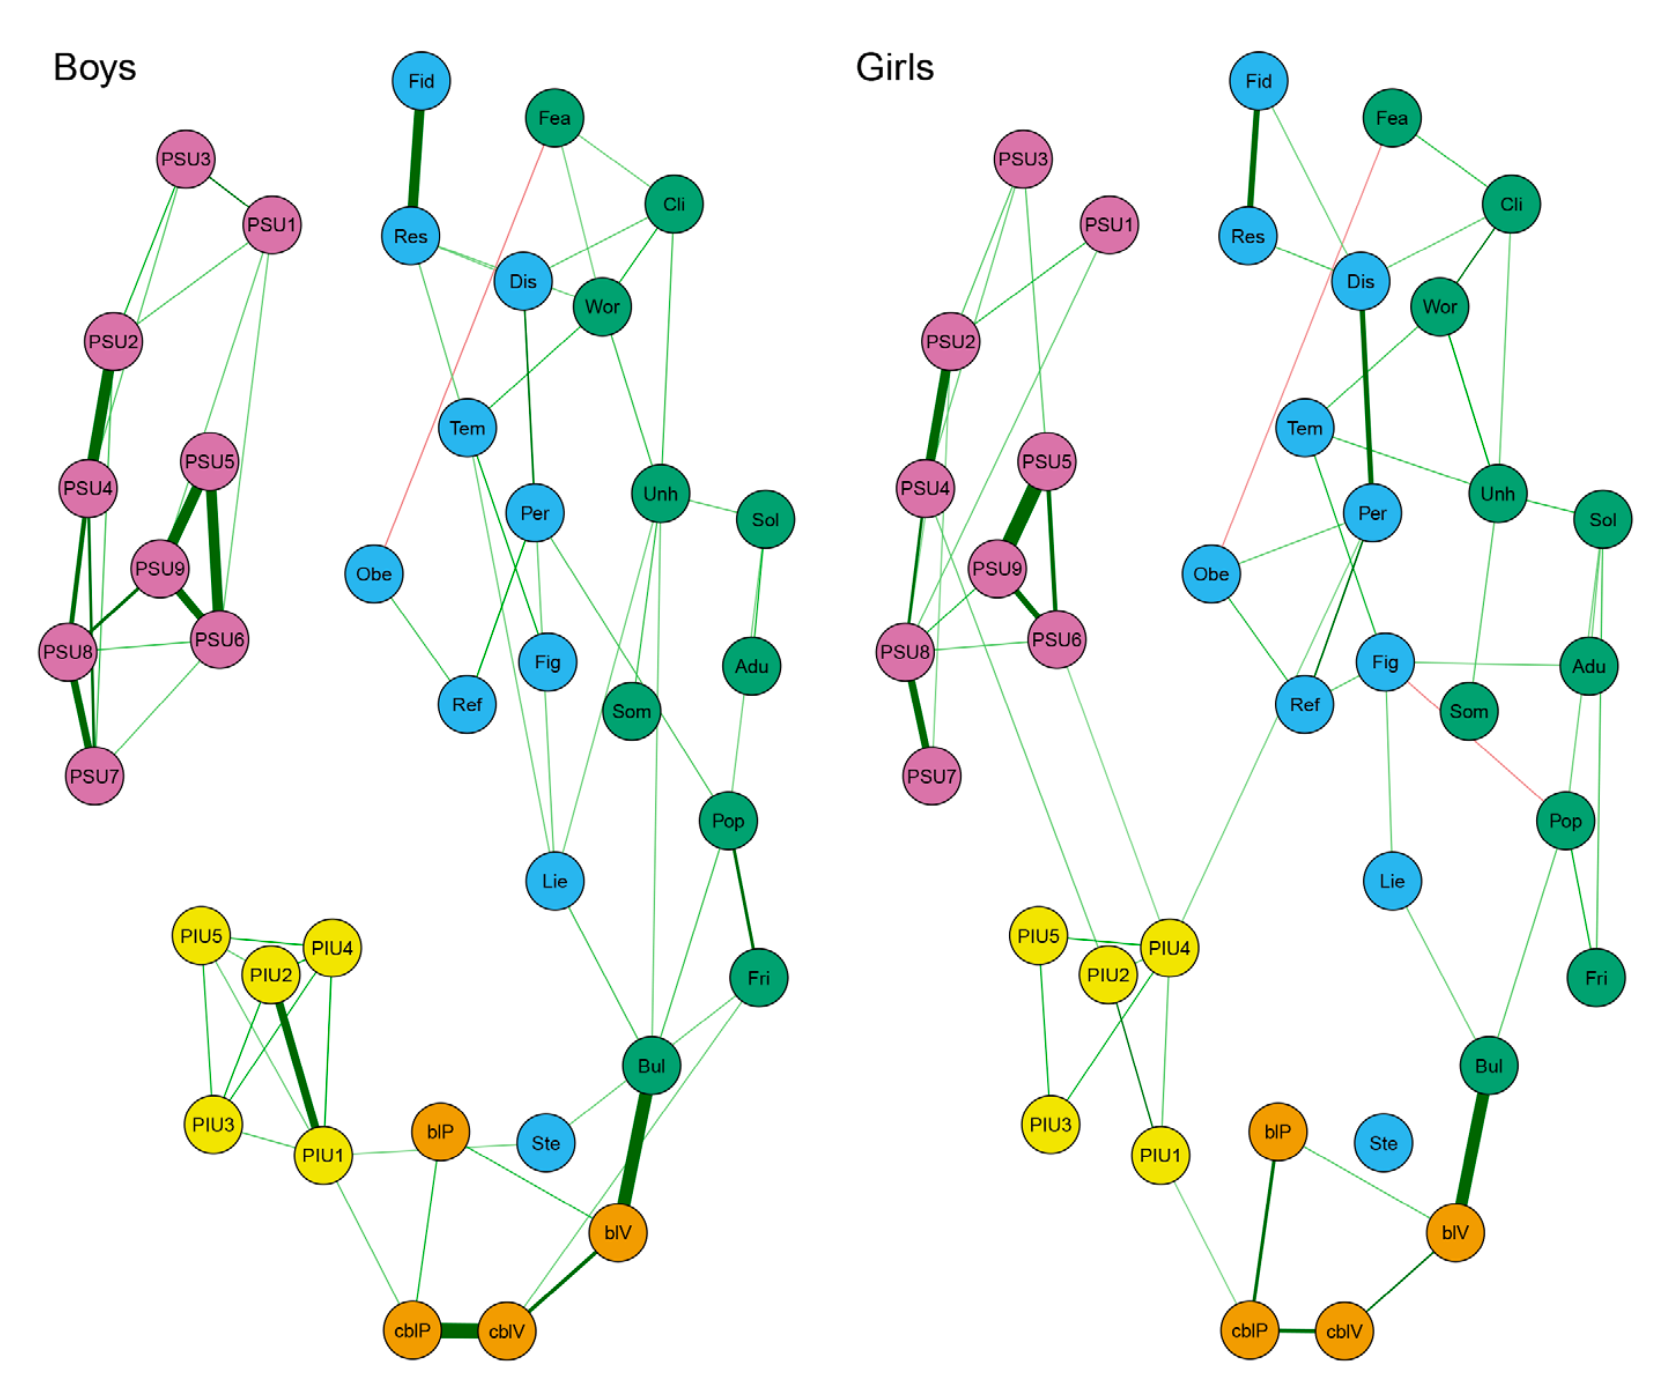 Obr. 1. Síťový model pro chlapce (vlevo) a dívky (vpravo). Čím tlustší spojení mezi uzly, tím silnější vztah. Žluté = problémové užívání internetu, růžové = problémové užívání telefonů, oranžové = (kyber)šikana, modře a zeleně = psychosociální potíže.